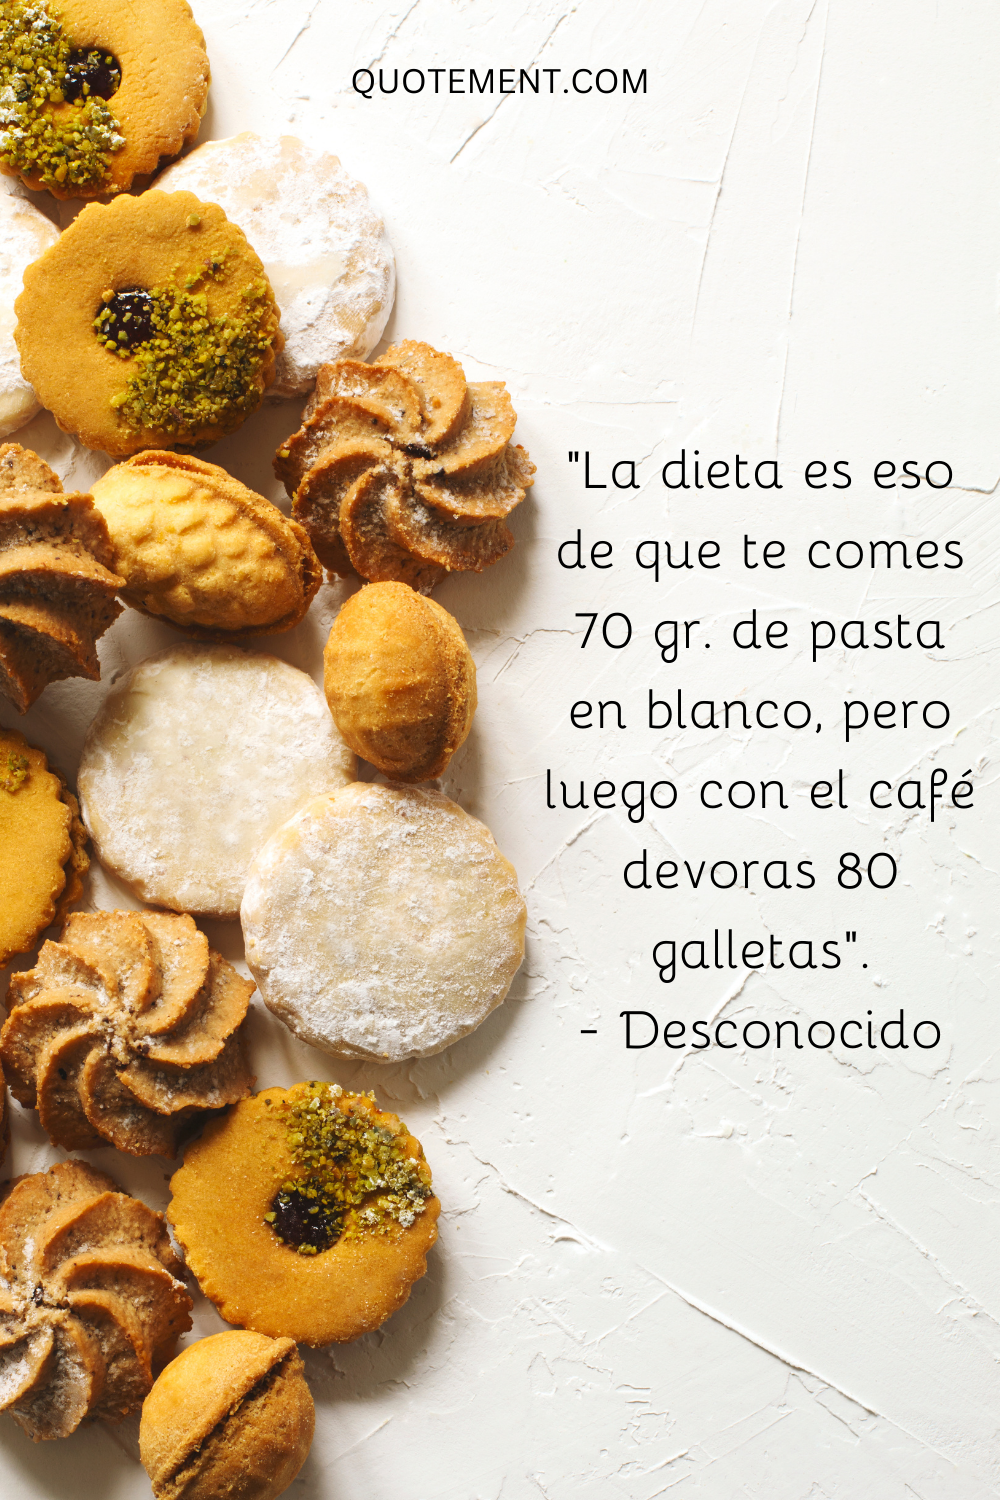 La dieta es eso de que te comes 70 gr. de pasta en blanco, pero luego con el café devoras 80 galletas